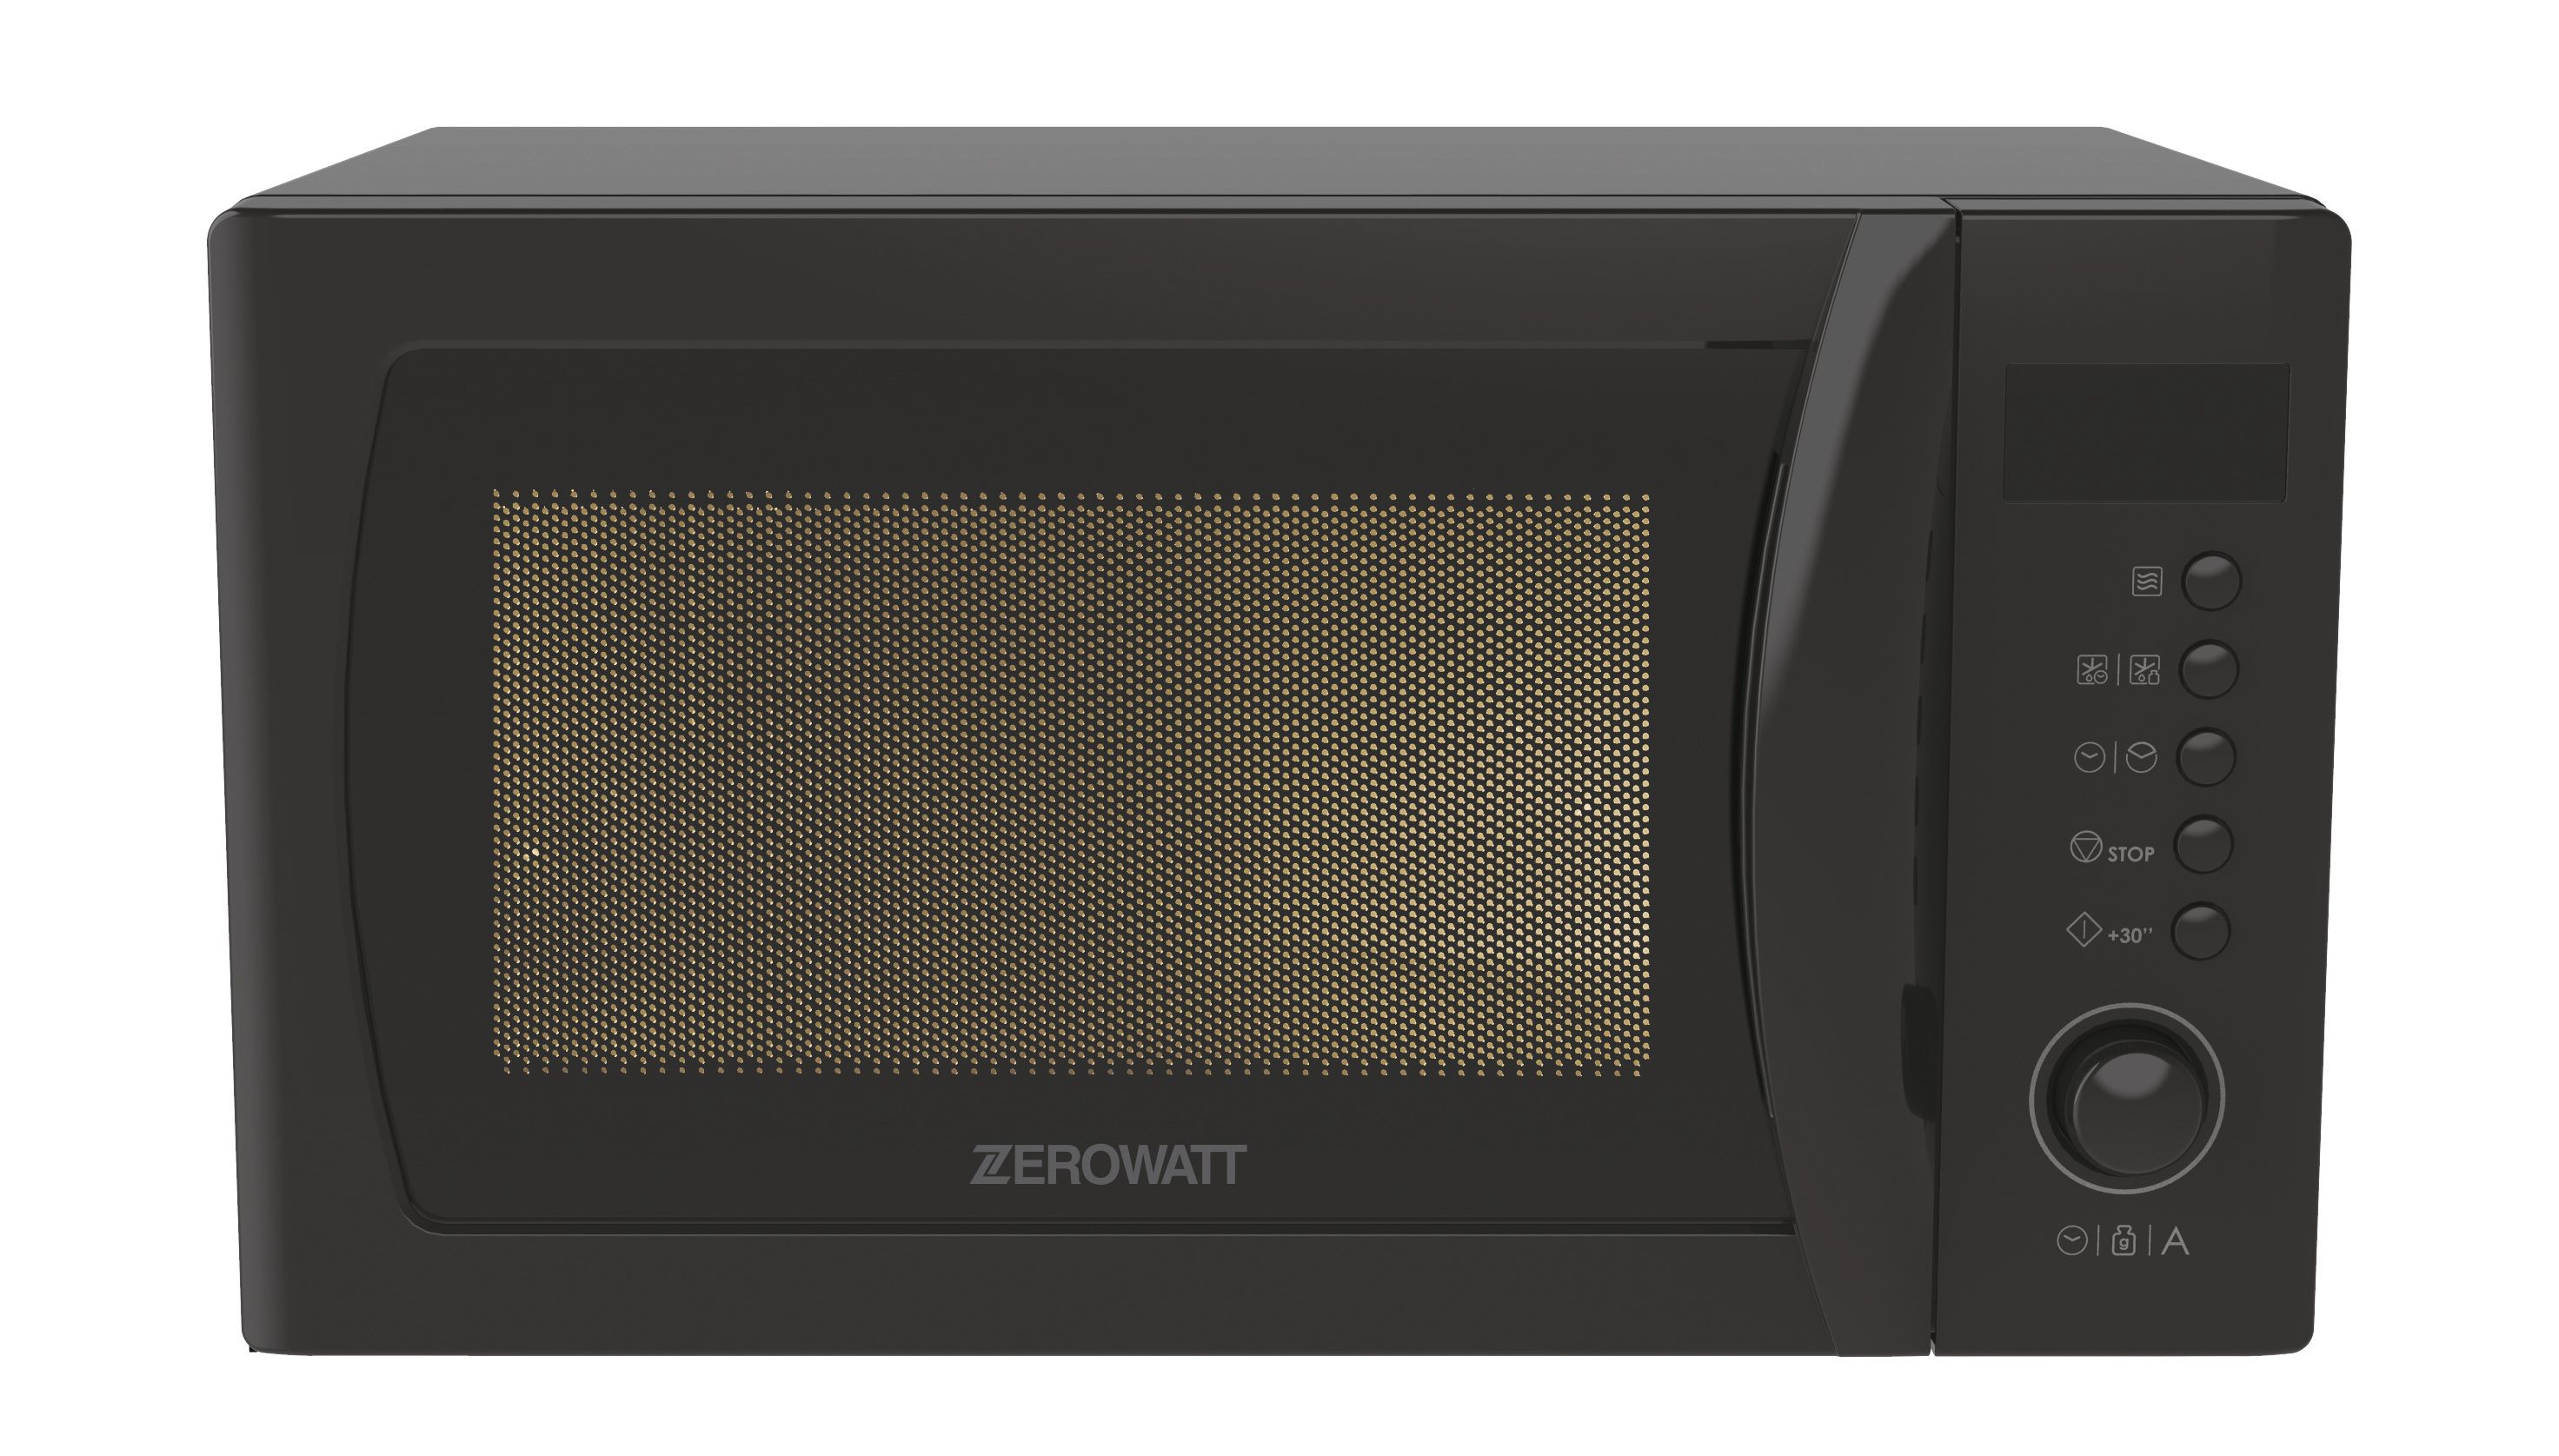 Микроволновая печь Zerowatt Zmwa20sdlb-07, цвет черный